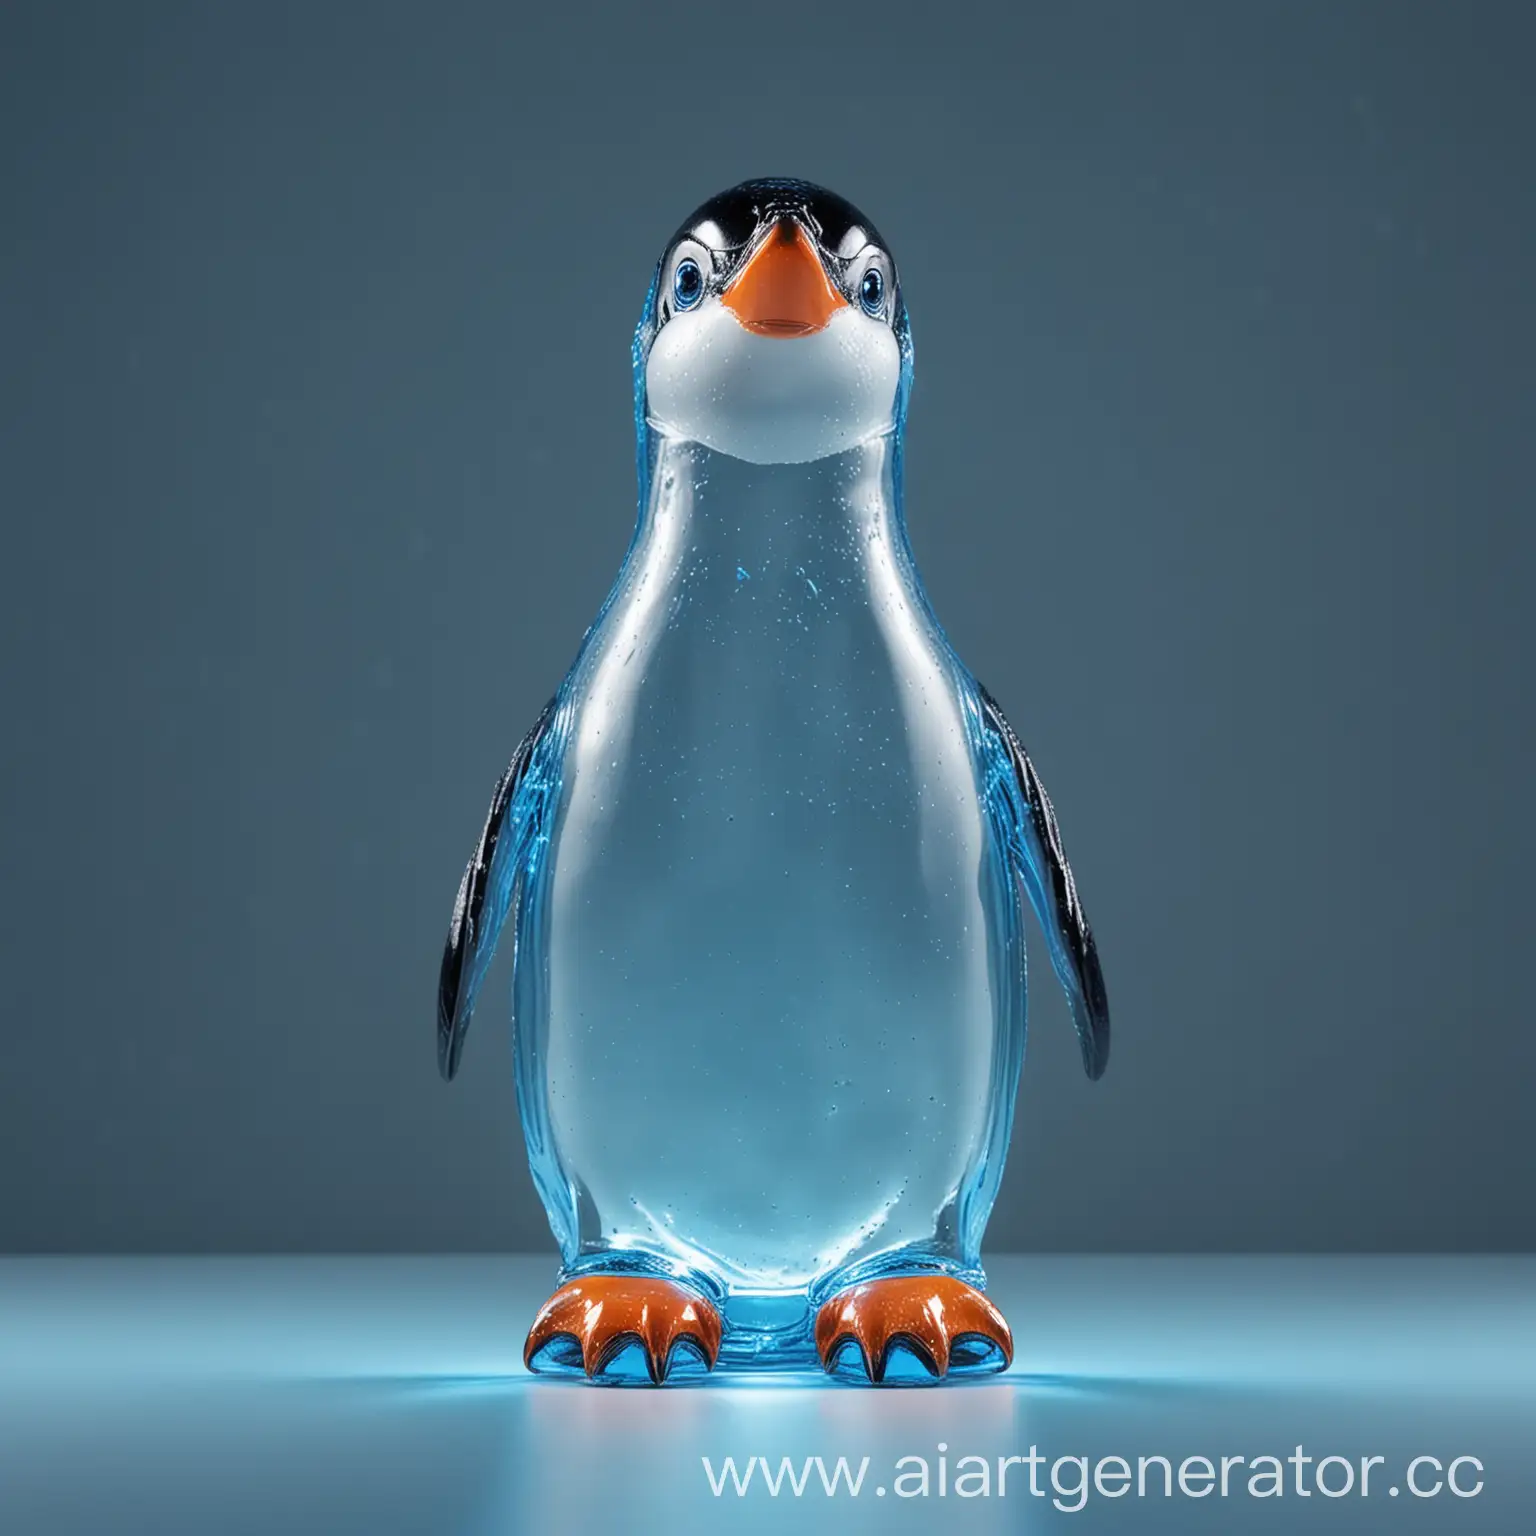 Стеклянная прозрачная бутылка в виде пингвина, голова пингвина смотрит перпендикулярно вверх, клюв открыт,  в клюве пингвина крышка бутылки, голубое неоновое освещение